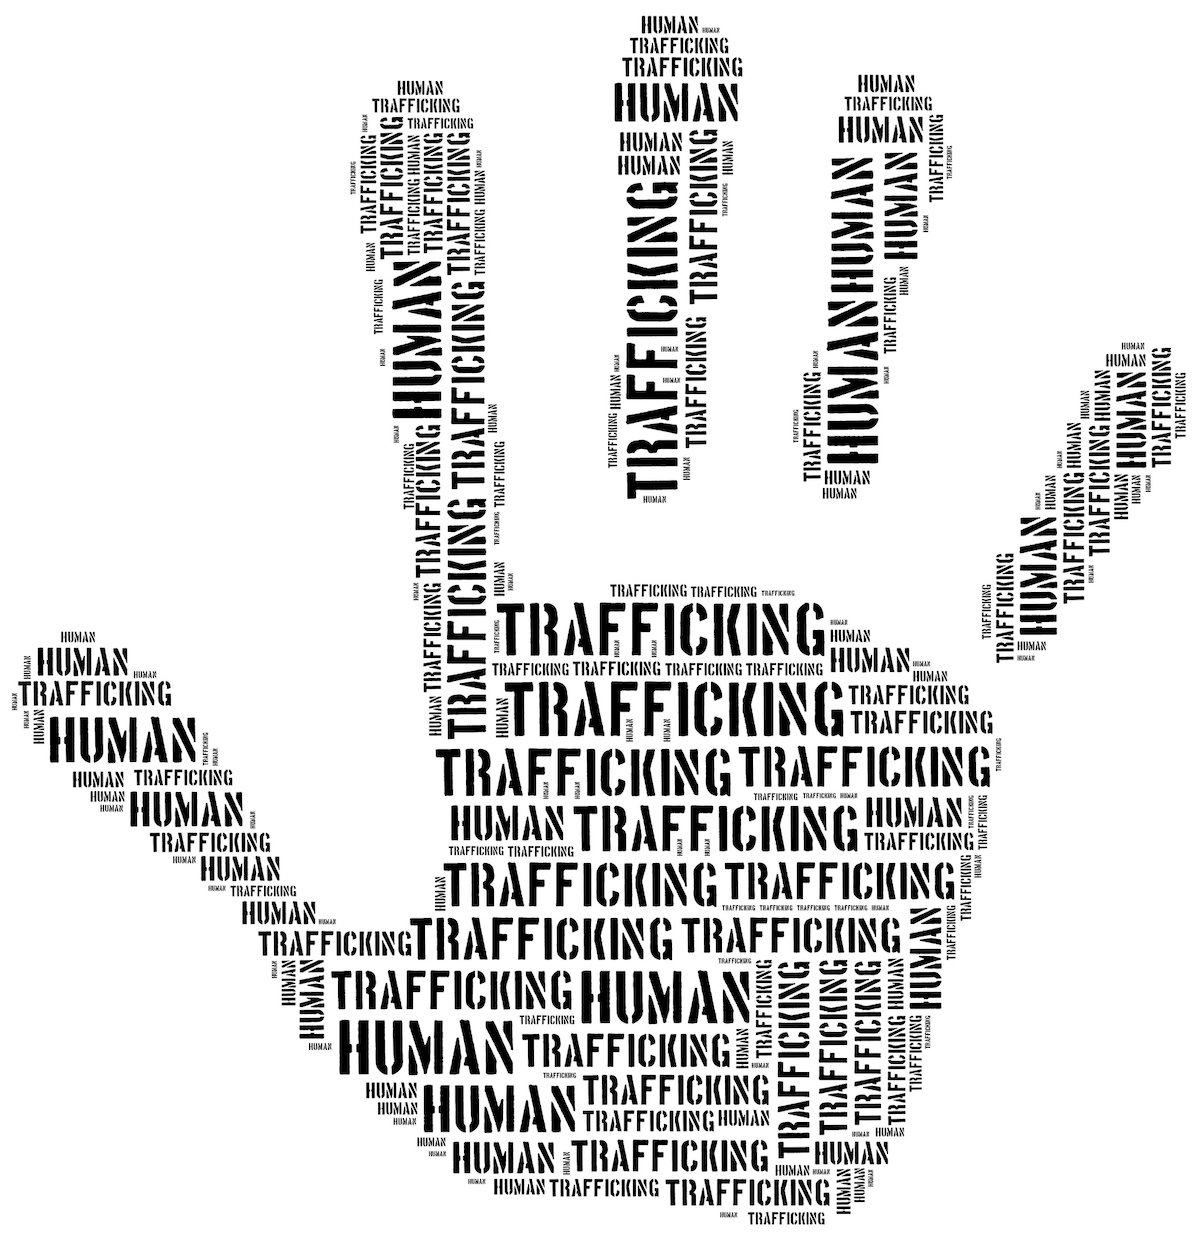 Human traffickingtrafficking